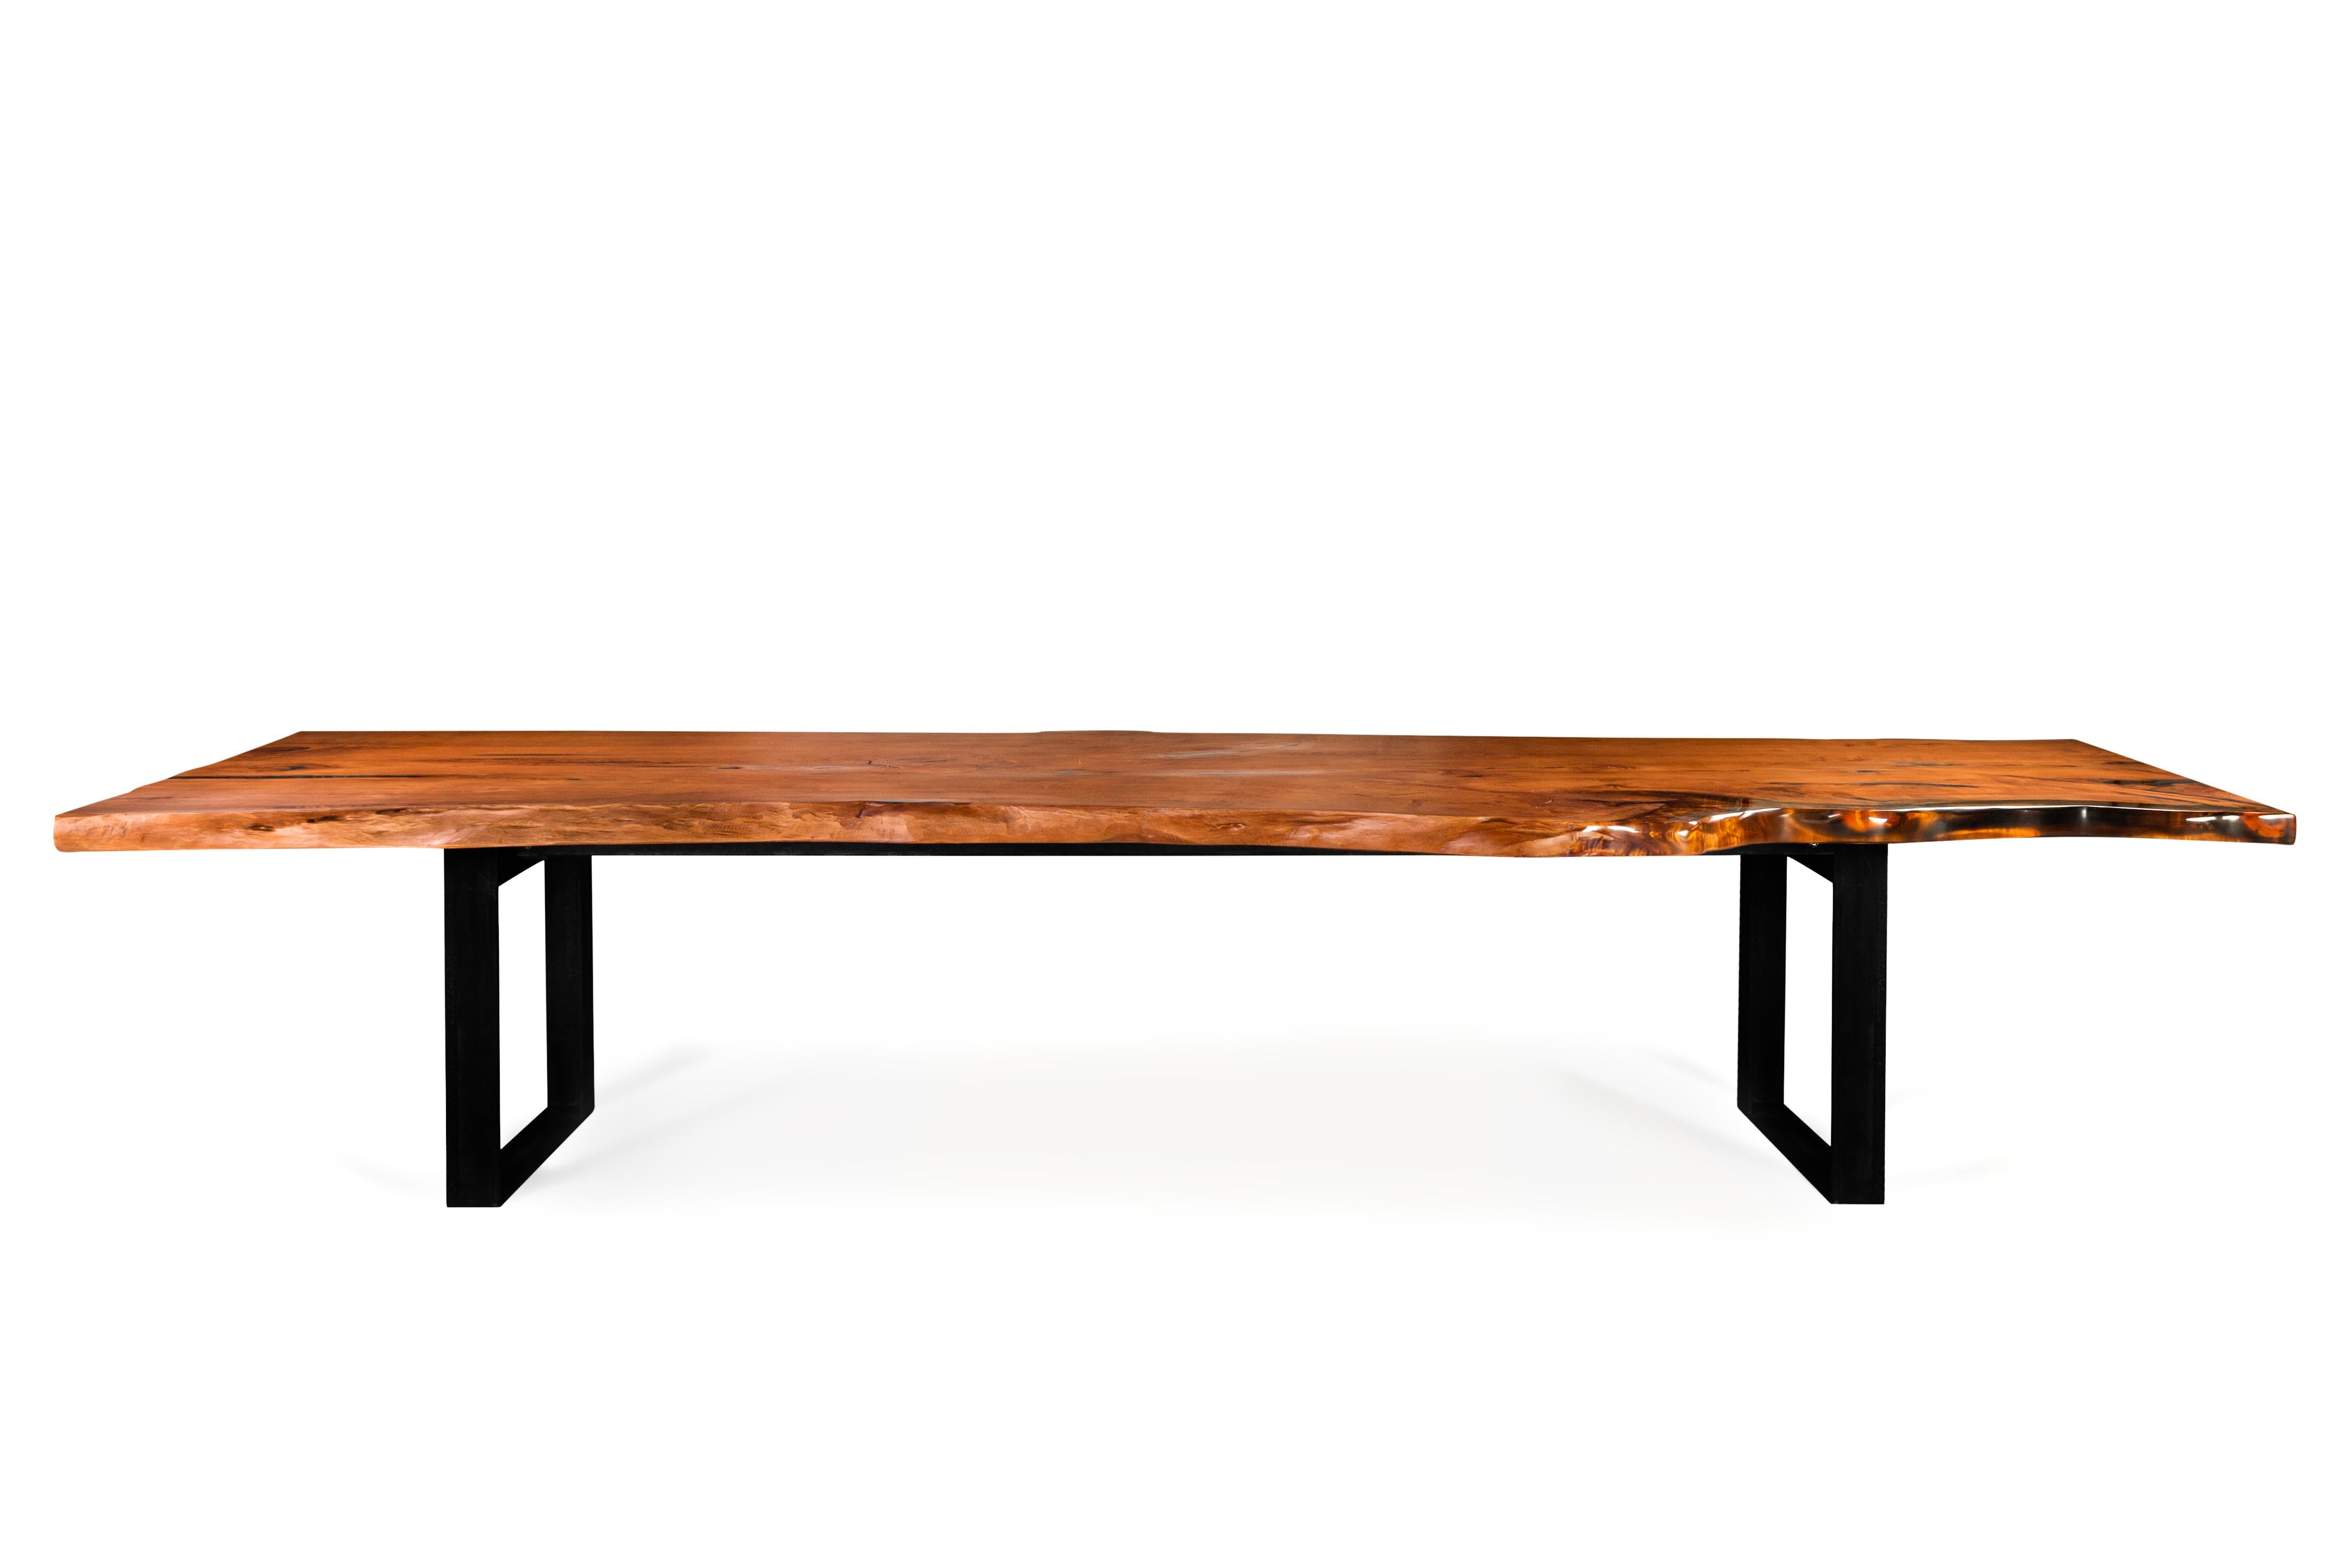 Taurus ist der erste Entwurf der Matariki-Kapsel, einer Kollektion von drei außergewöhnlichen Tischen aus massivem Macrocarpa-Holz und Harz: ein neues Holz aus Neuseeland für Hebanon-Projekte.

Identität
Matariki bezeichnet in der Sprache der Maori